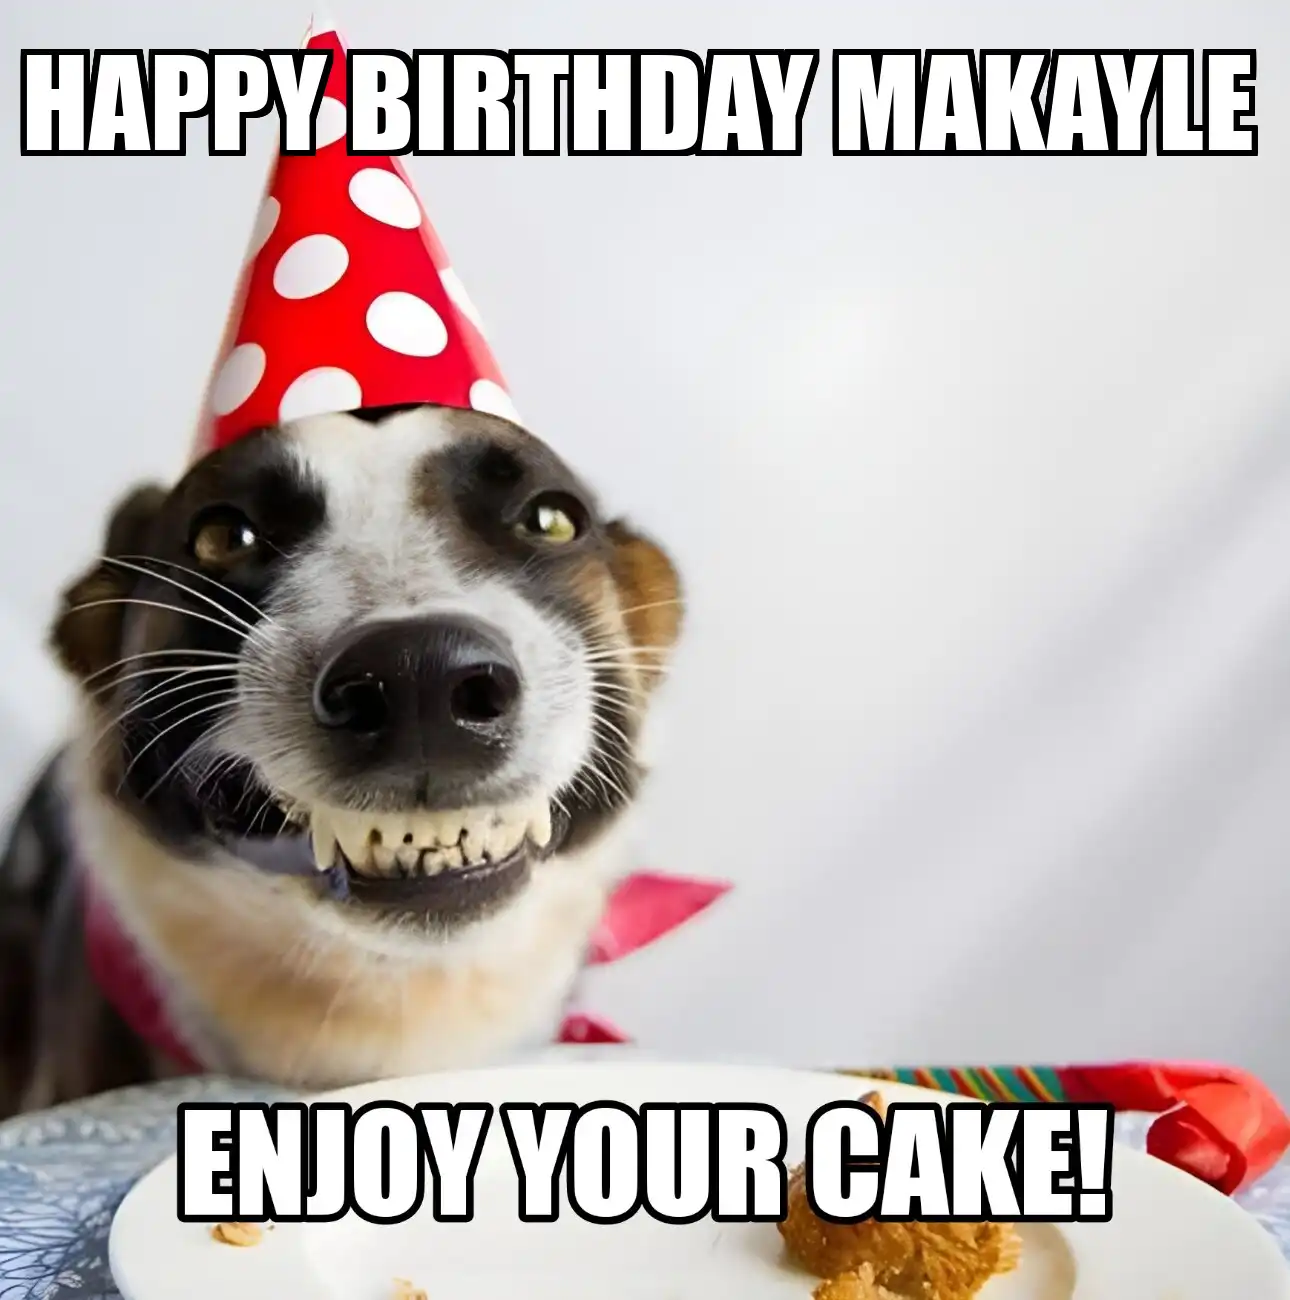 Happy Birthday Makayle Enjoy Your Cake Dog Meme